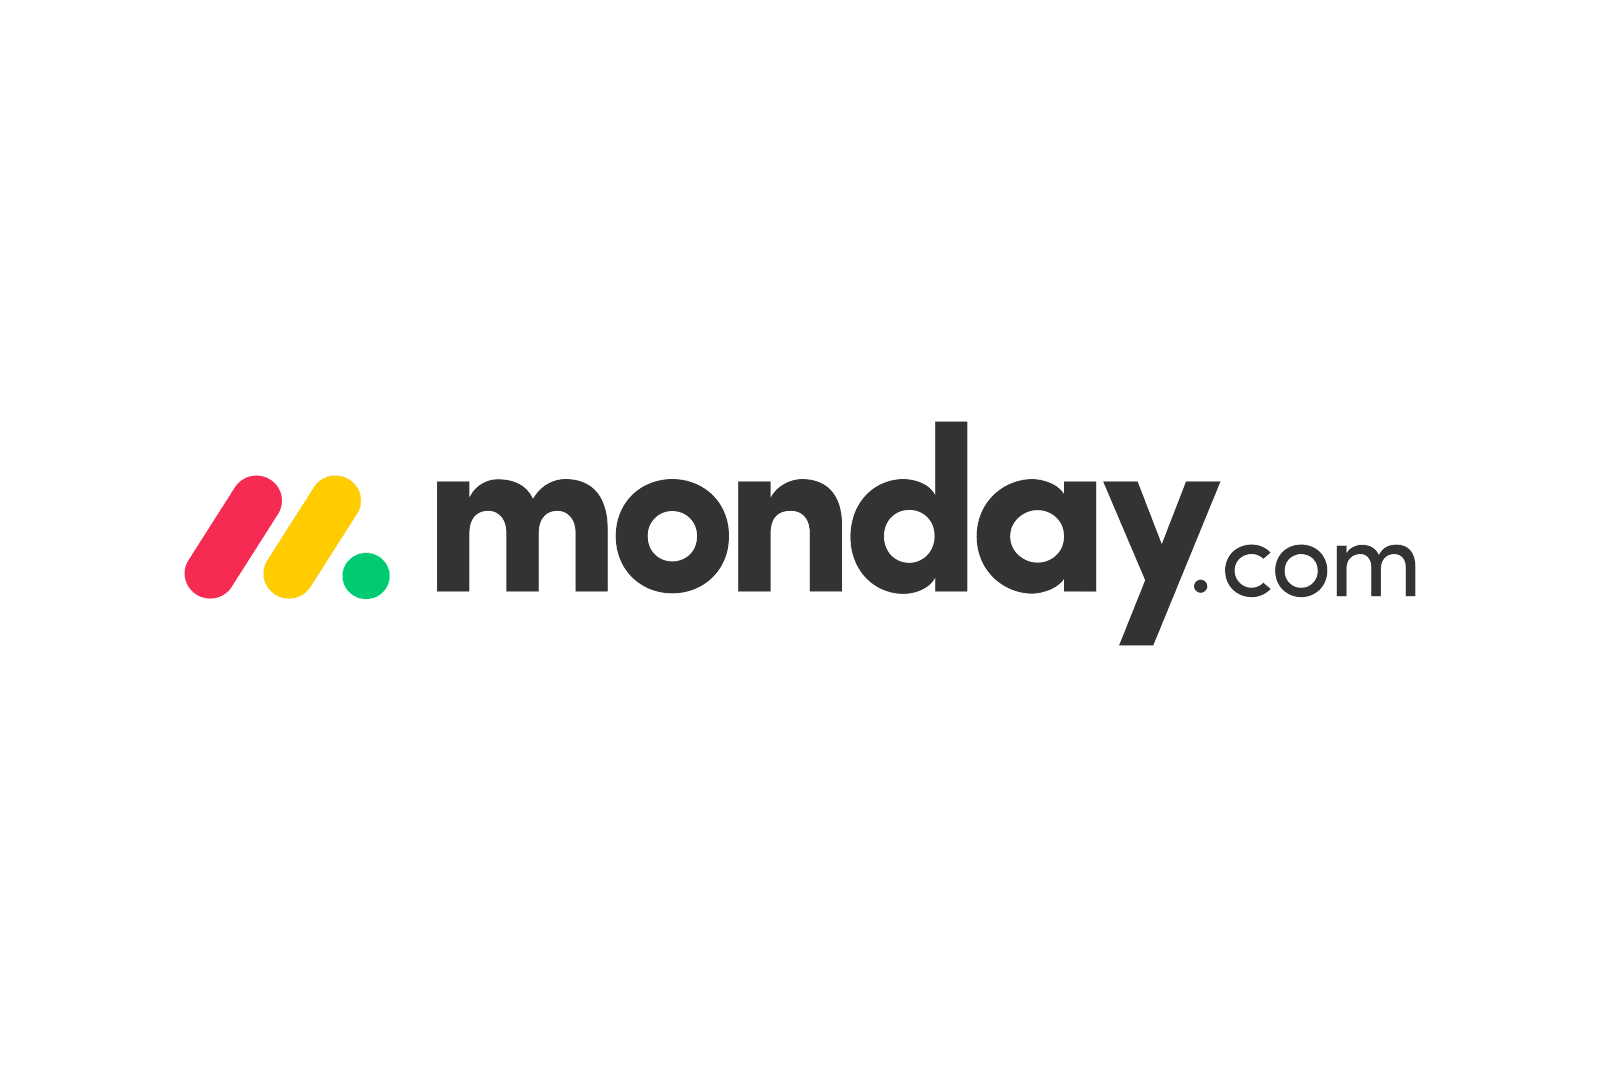 Monday.com logo.